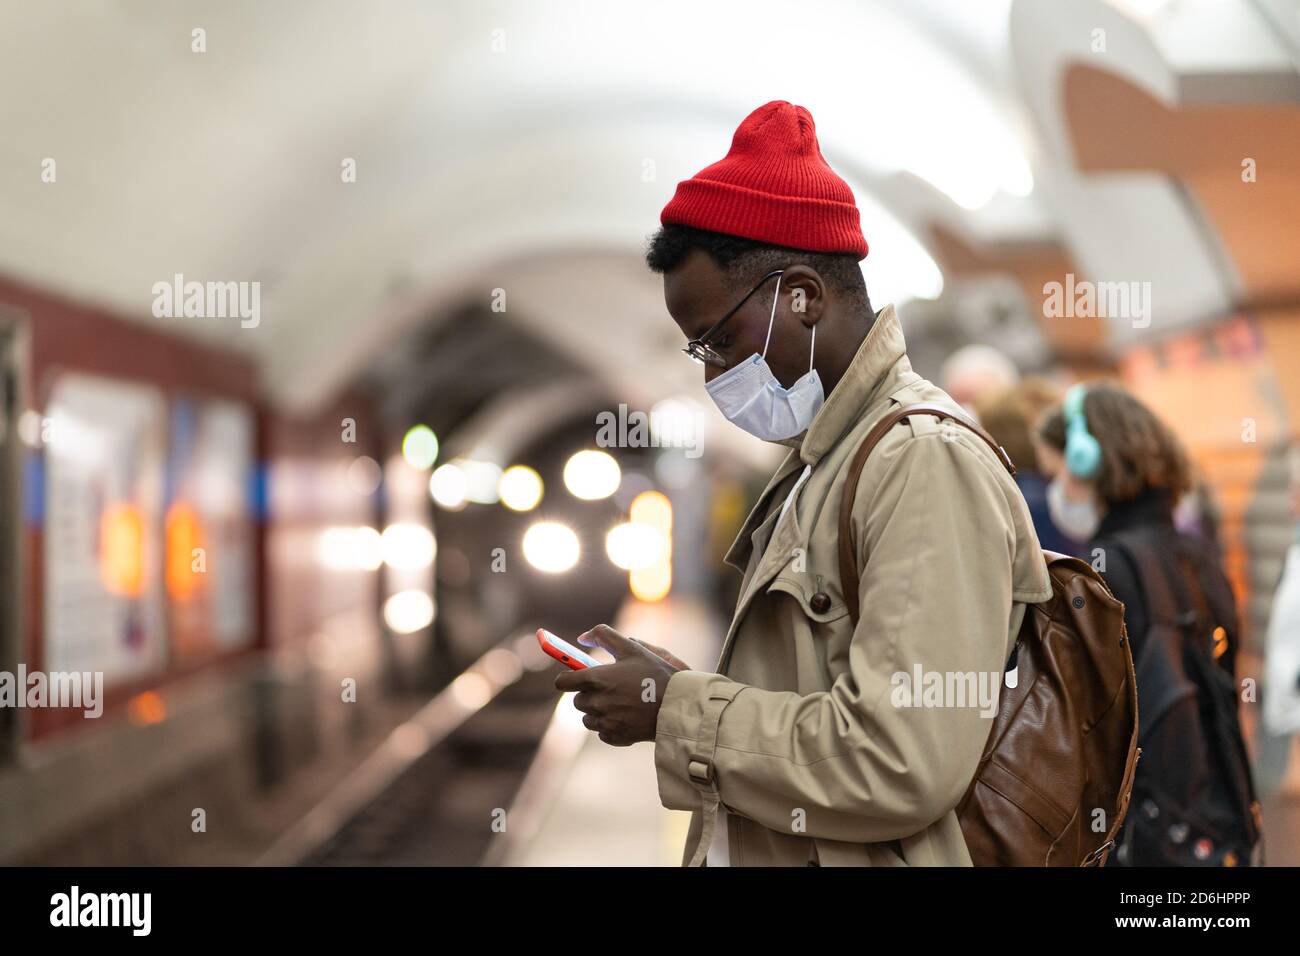 Schwarzer Tausendjähriger Mann im Trenchcoat, roter Hut mit Gesichtsmaske als Schutz gegen covid-19, Grippe-Virus, wartet auf den Zug an der U-Bahn-Station, usi Stockfoto